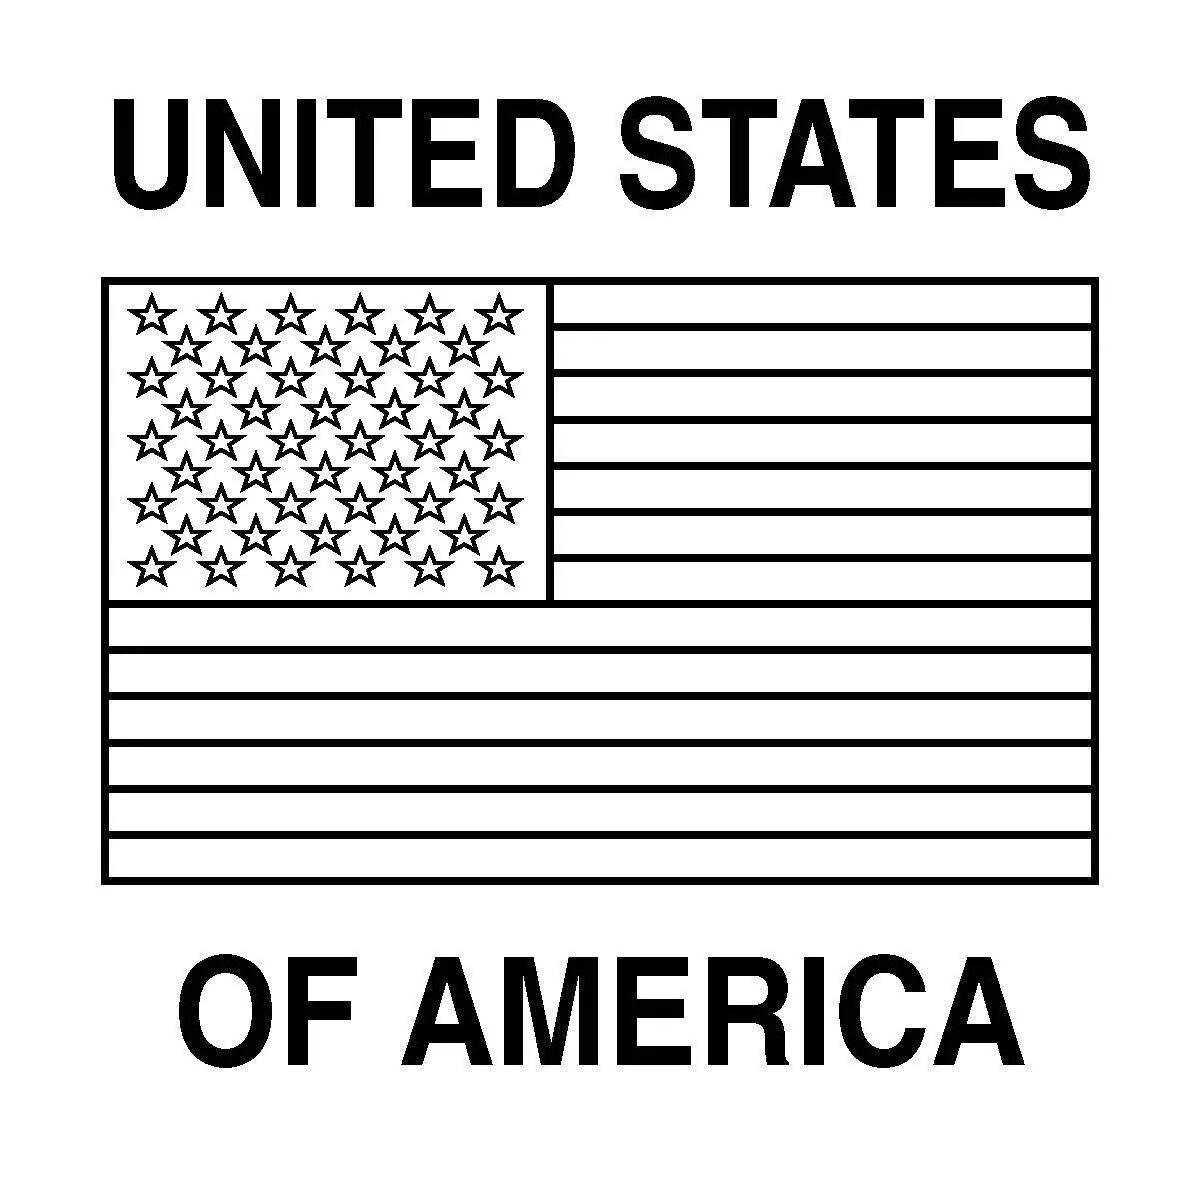 Изолированная страница раскраски американского флага для детей